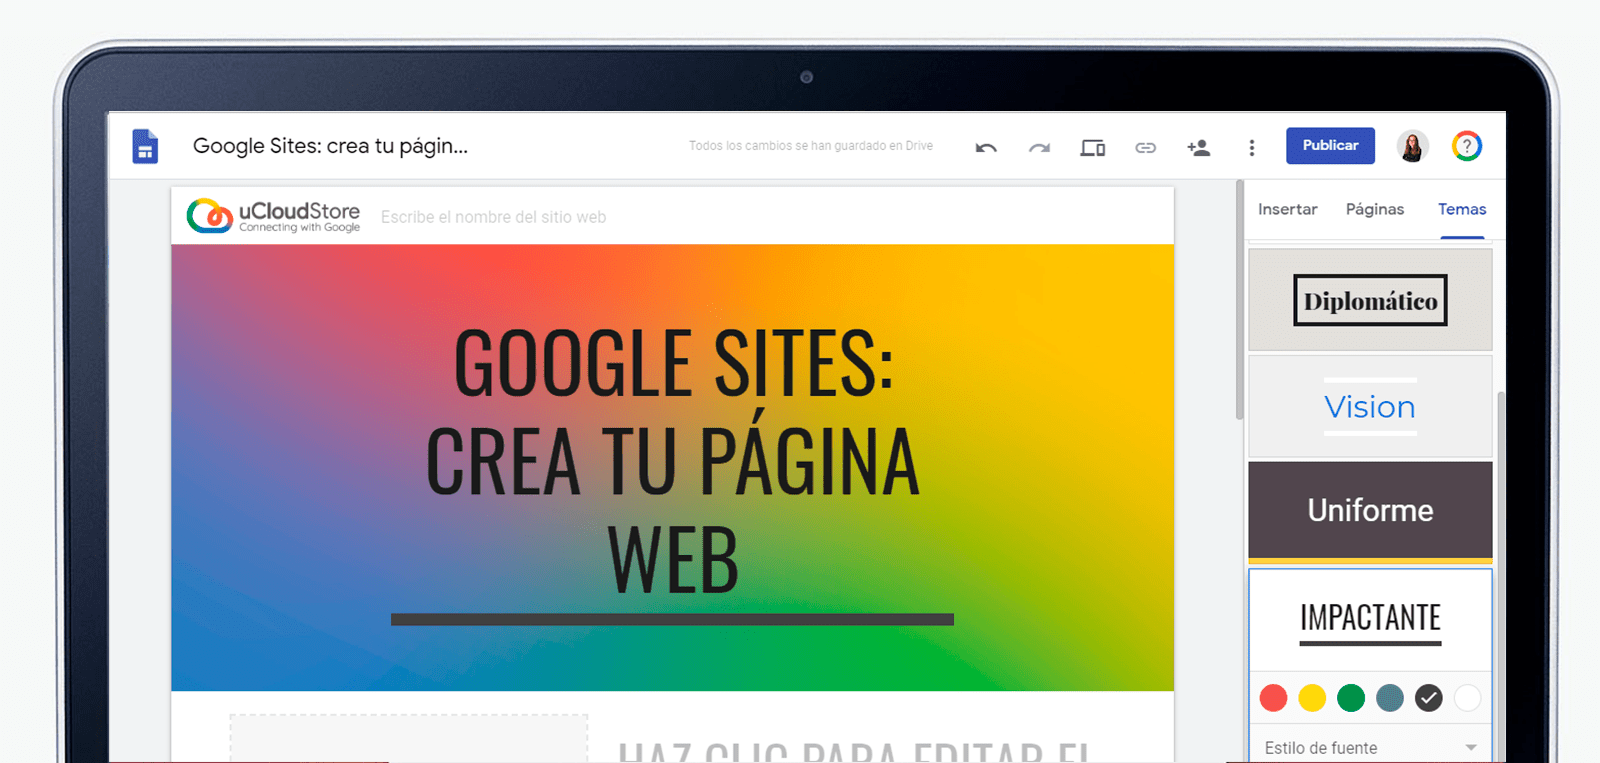 Google Sites: crea tu página web en 10 minutos | uCloudStore